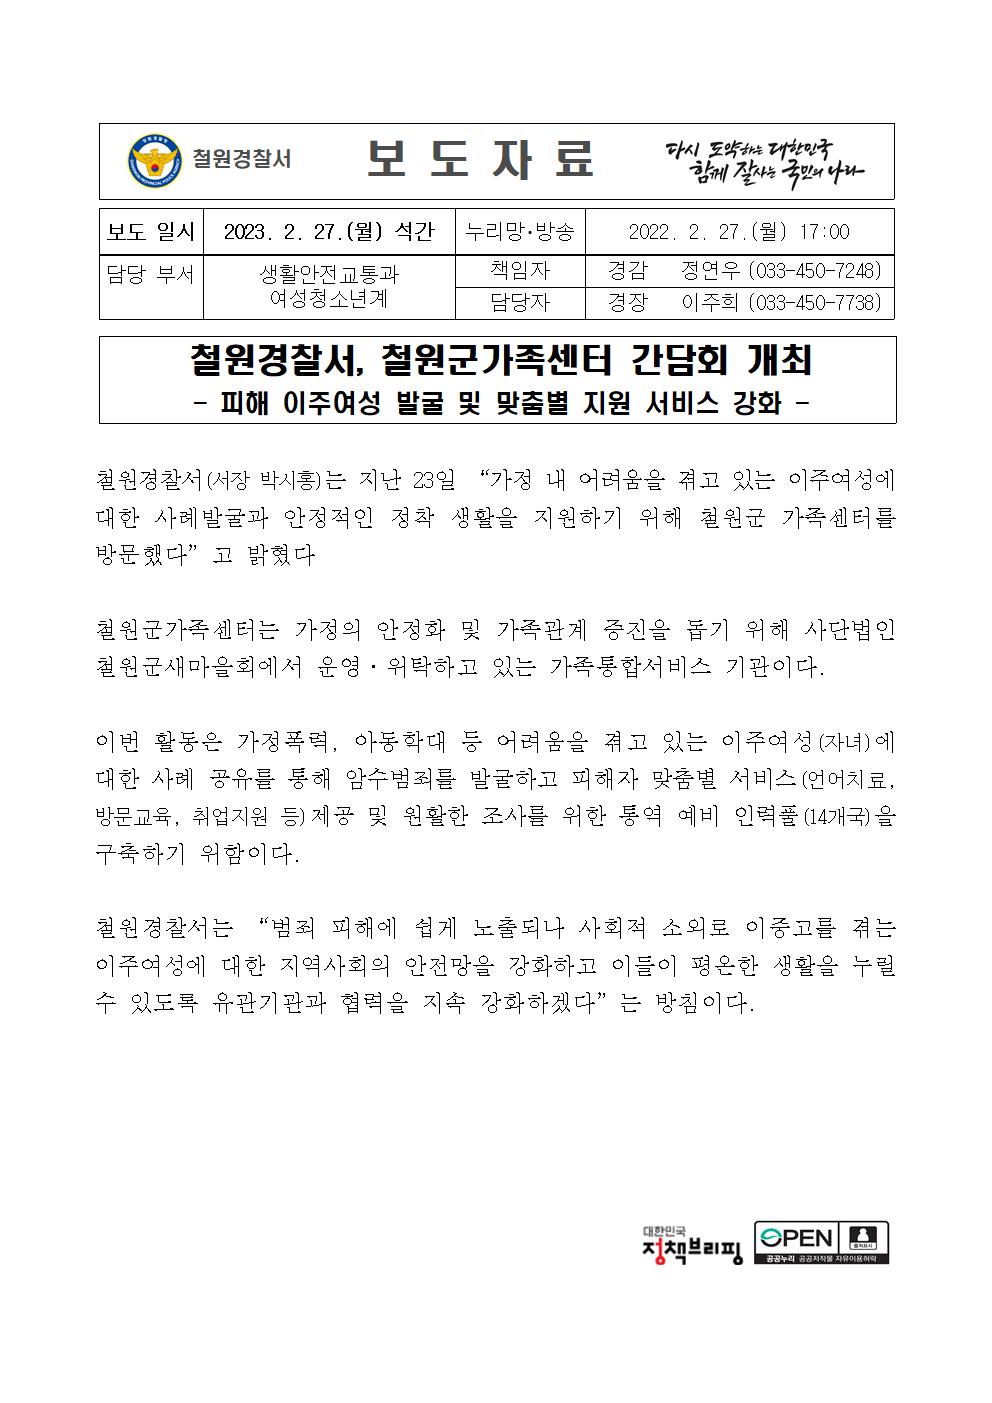 철원가족센터 간담회 개최-23.2.27. 철원가족센터 간담회 개최